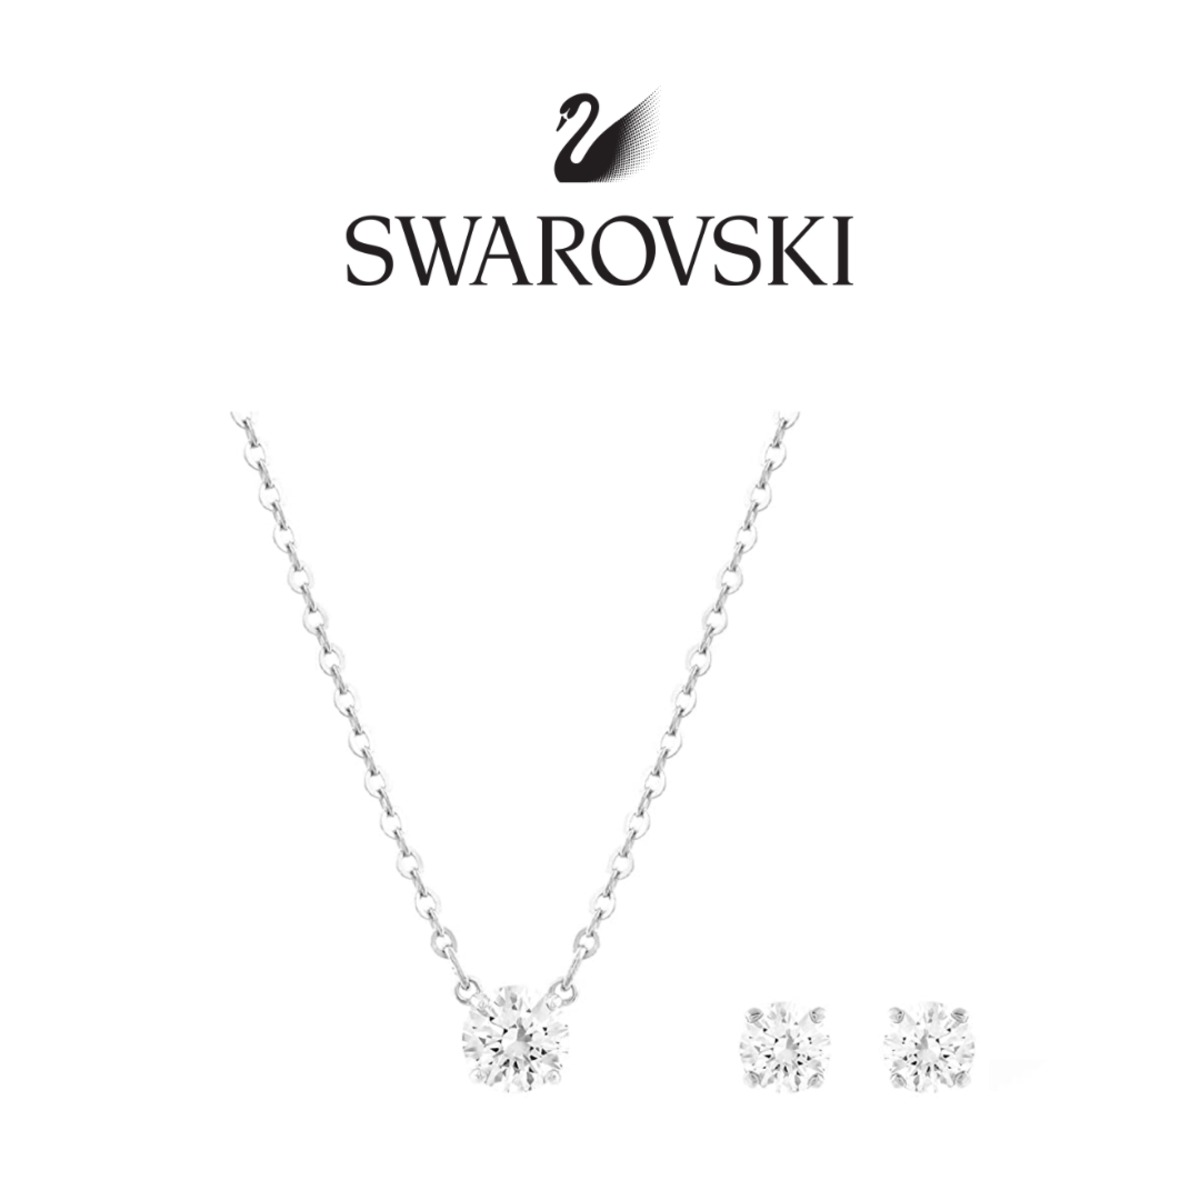 スワロフスキーセットのネックレスとイヤリング。SALE price